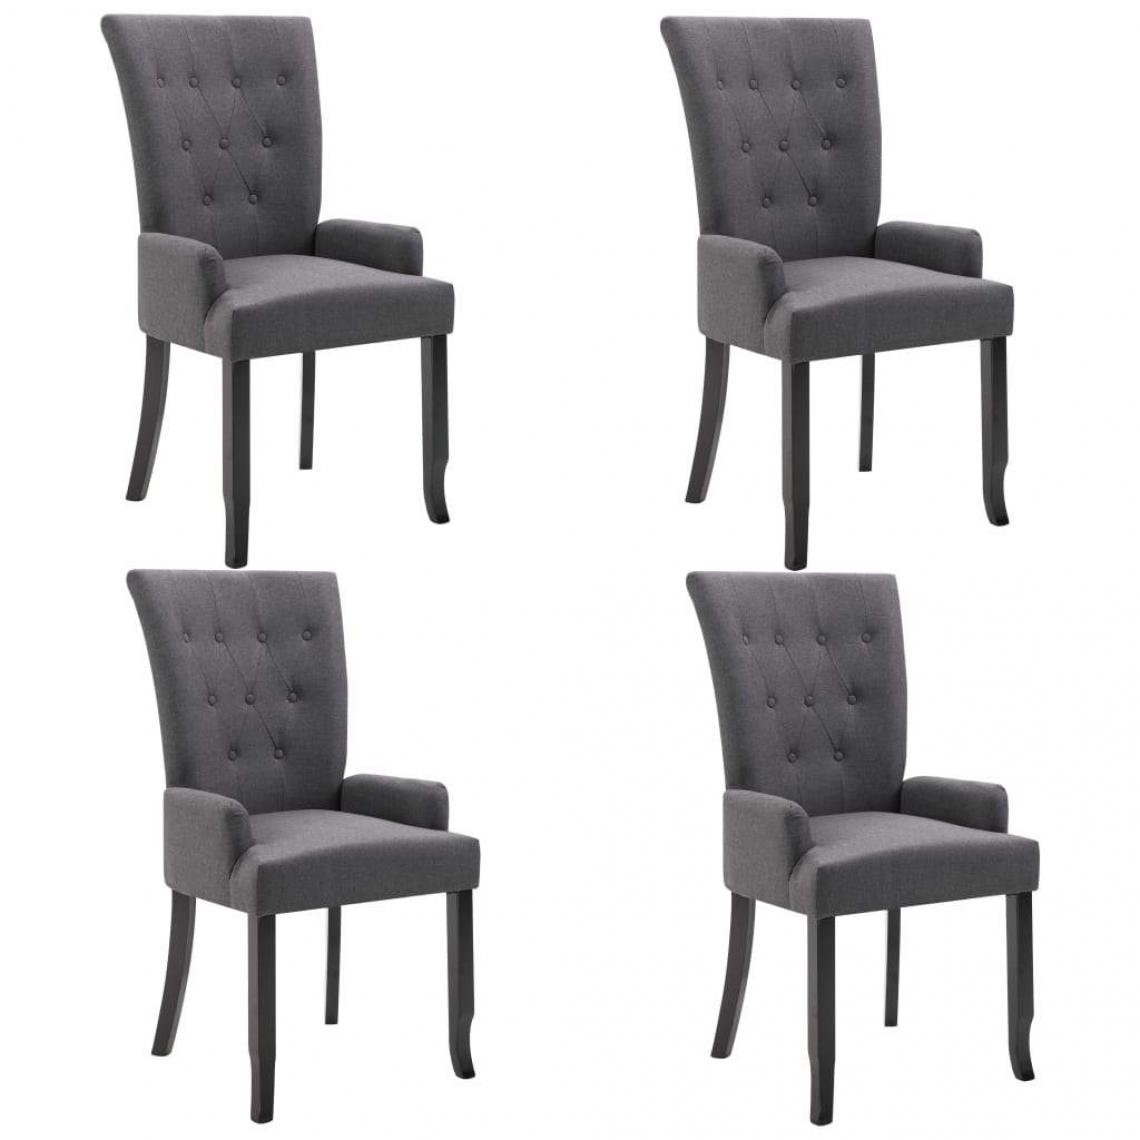 Decoshop26 - Lot de 4 chaises de salle à manger cuisine design moderne tissu gris foncé CDS022096 - Chaises